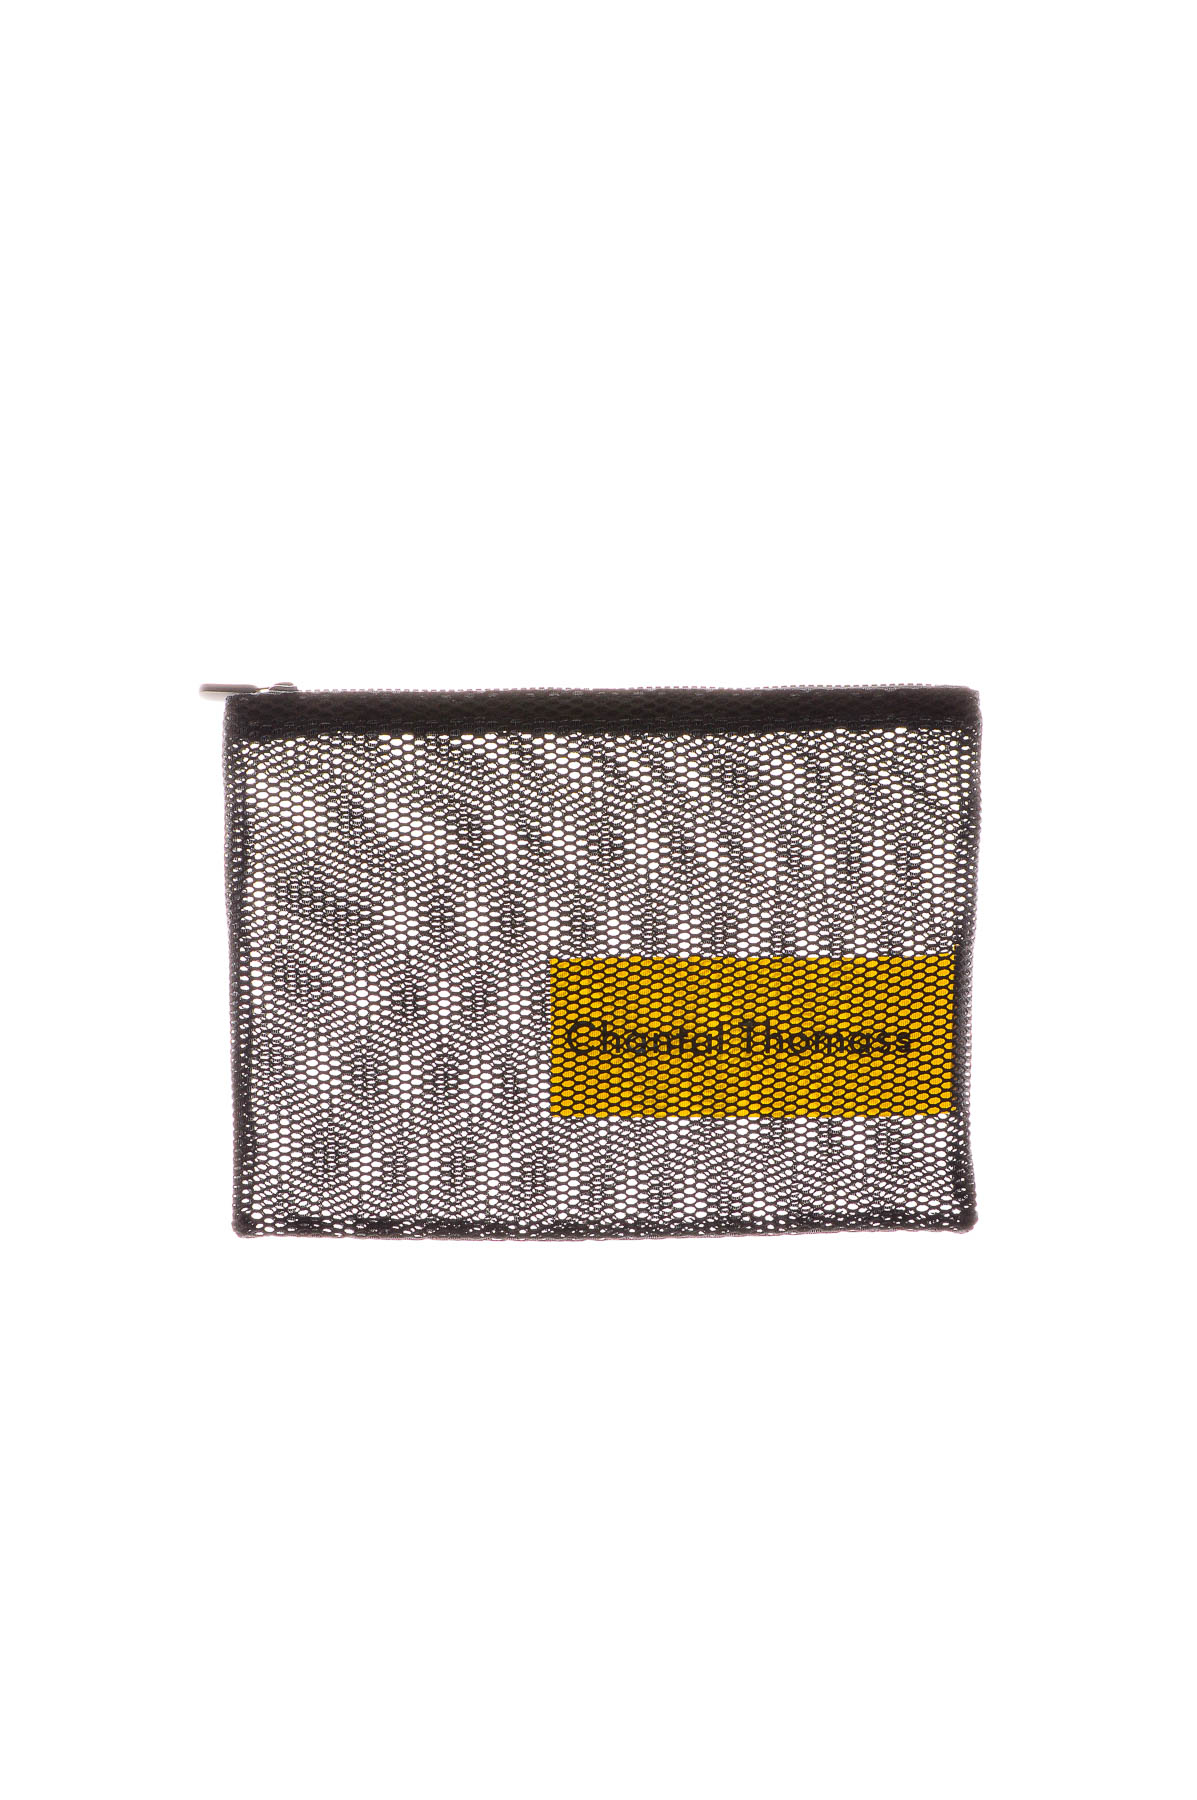 Toilet Kit Bag - Chantal Thomas - 0